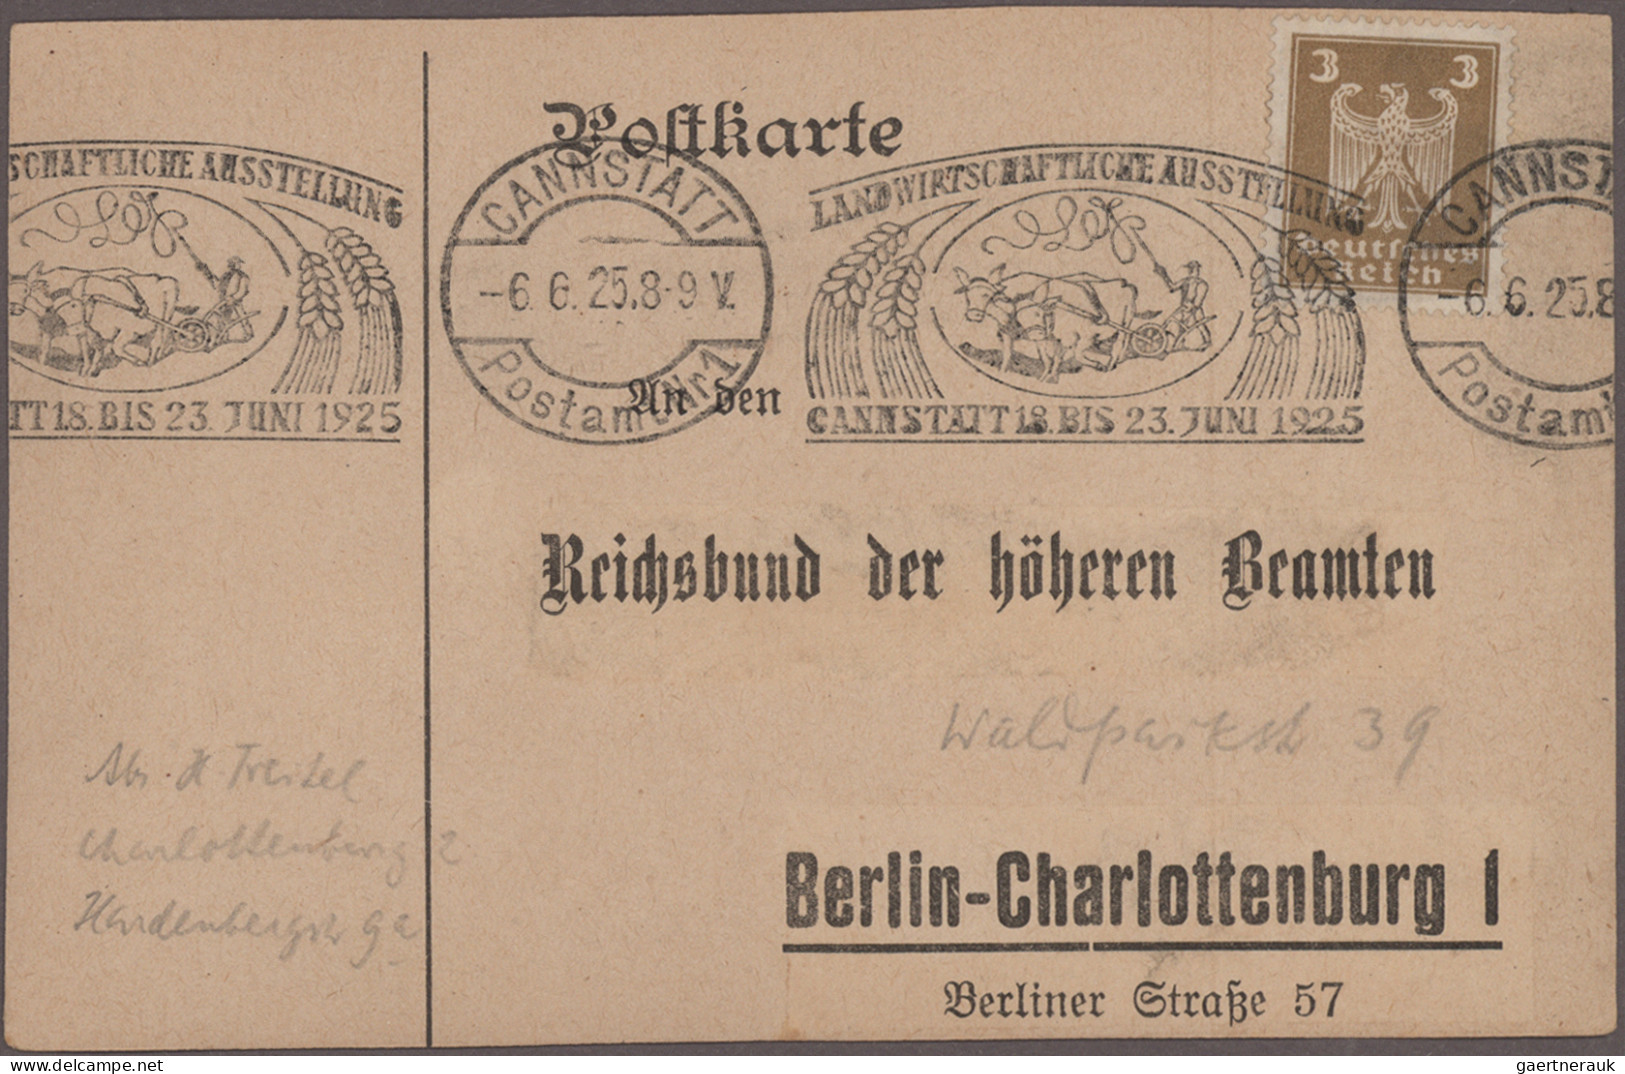 Deutsches Reich: 1874/1944, umfangreiche Partie von ca. 560 Briefen und Karten m